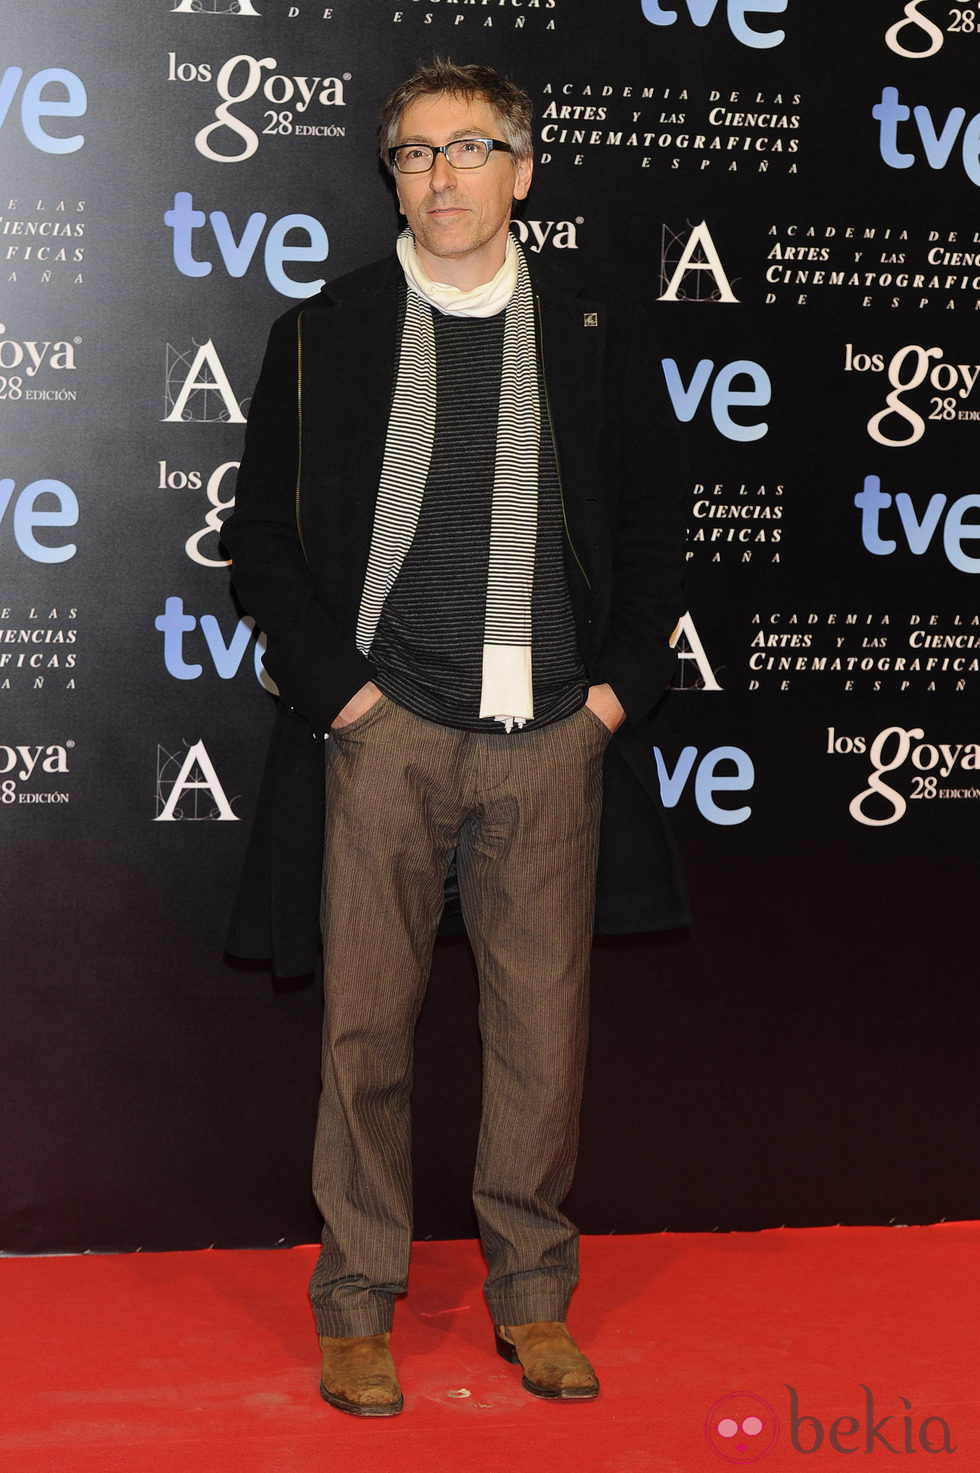 David Trueba en la fiesta de nominados a los premios Goya 2014